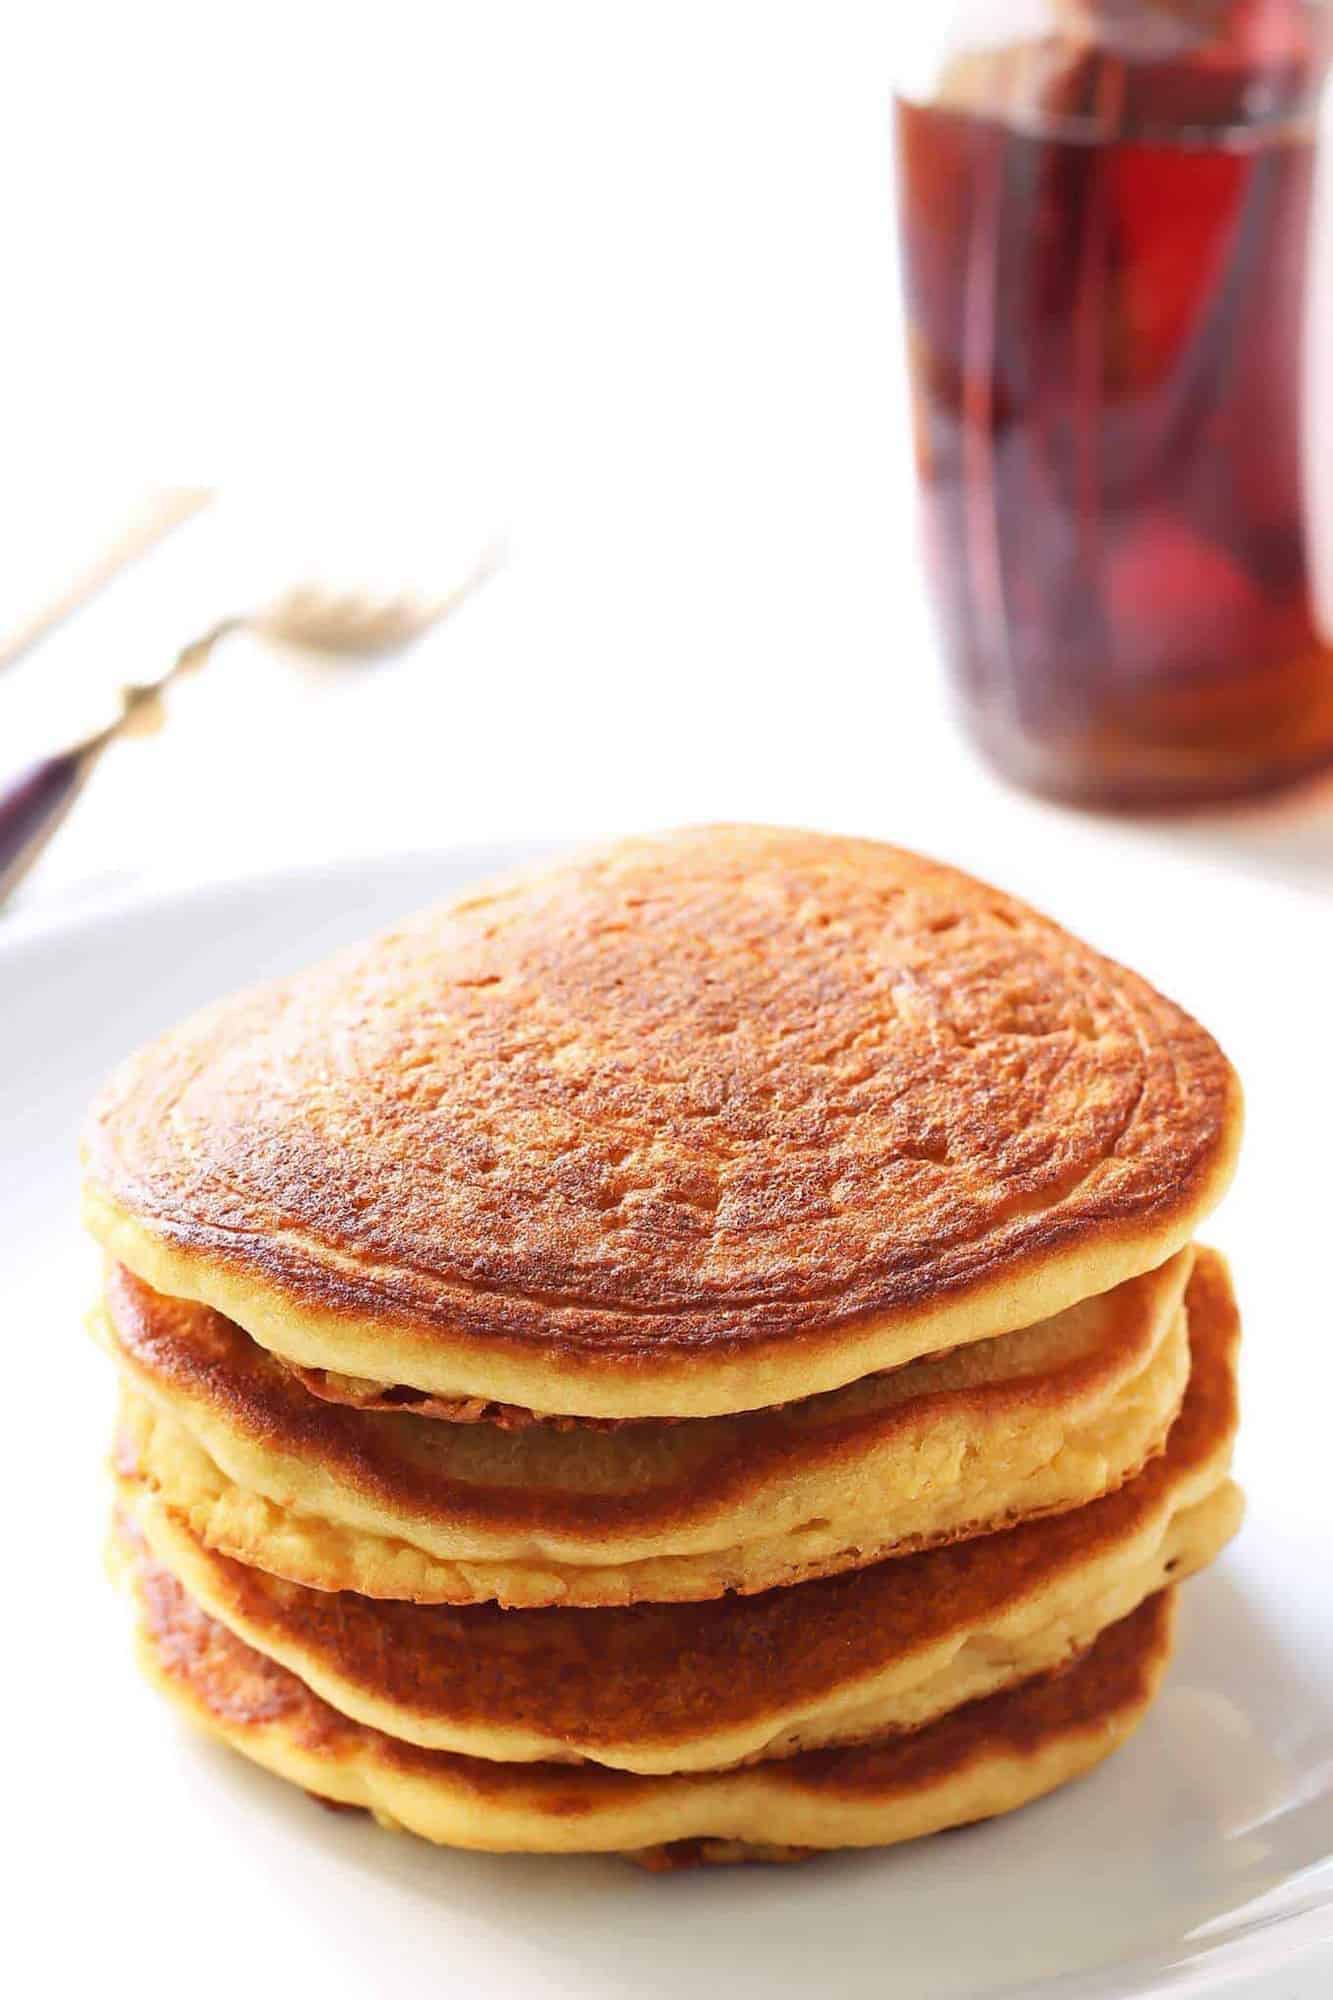 Fluffy Coconut Flour Pancakes